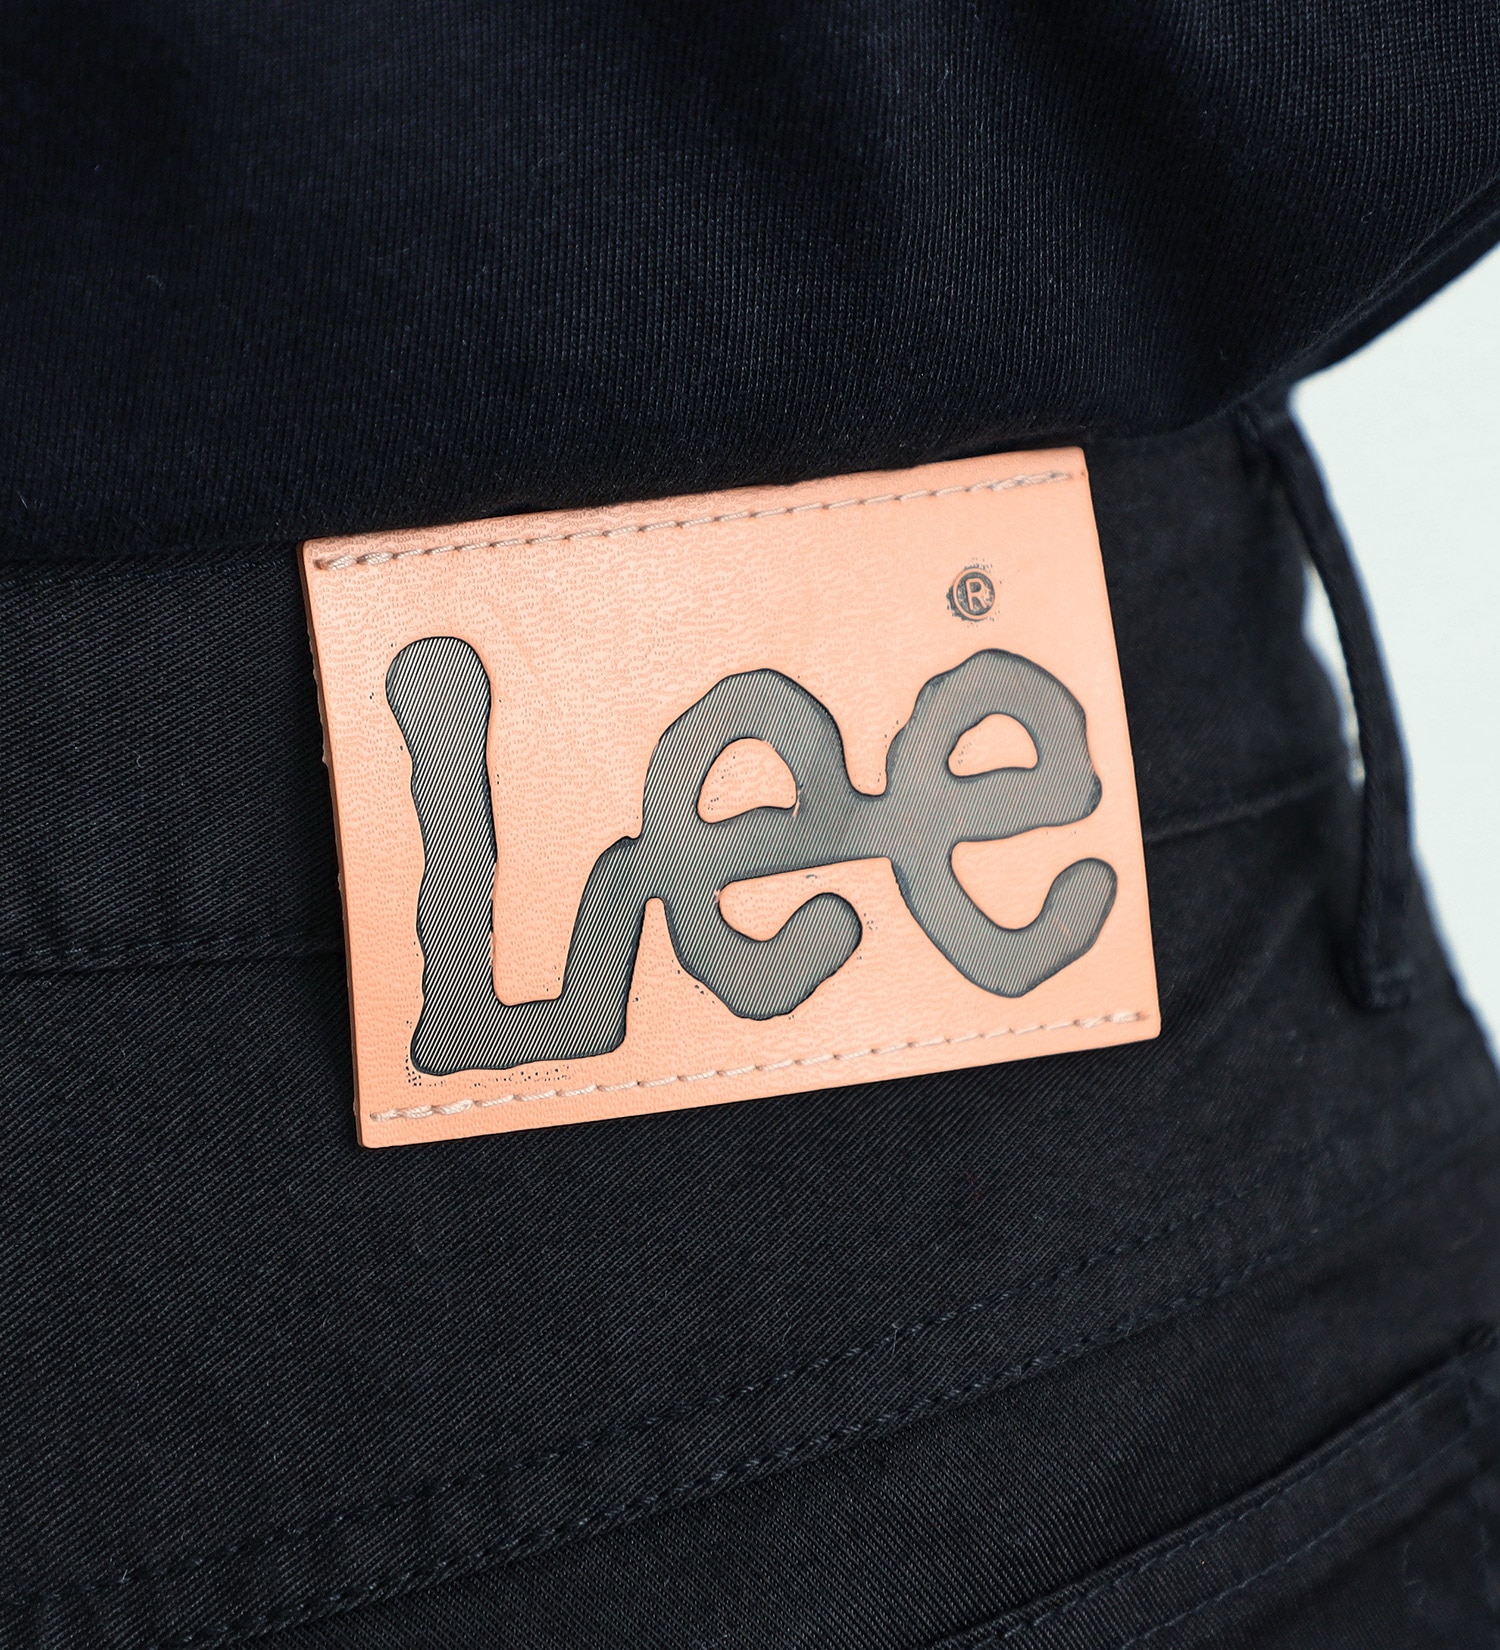 Lee(リー)の【予約割】【涼・COOL】ドライタッチで涼しく快適AMERICAN STANDARD 201 ストレート|パンツ/パンツ/メンズ|ブラック